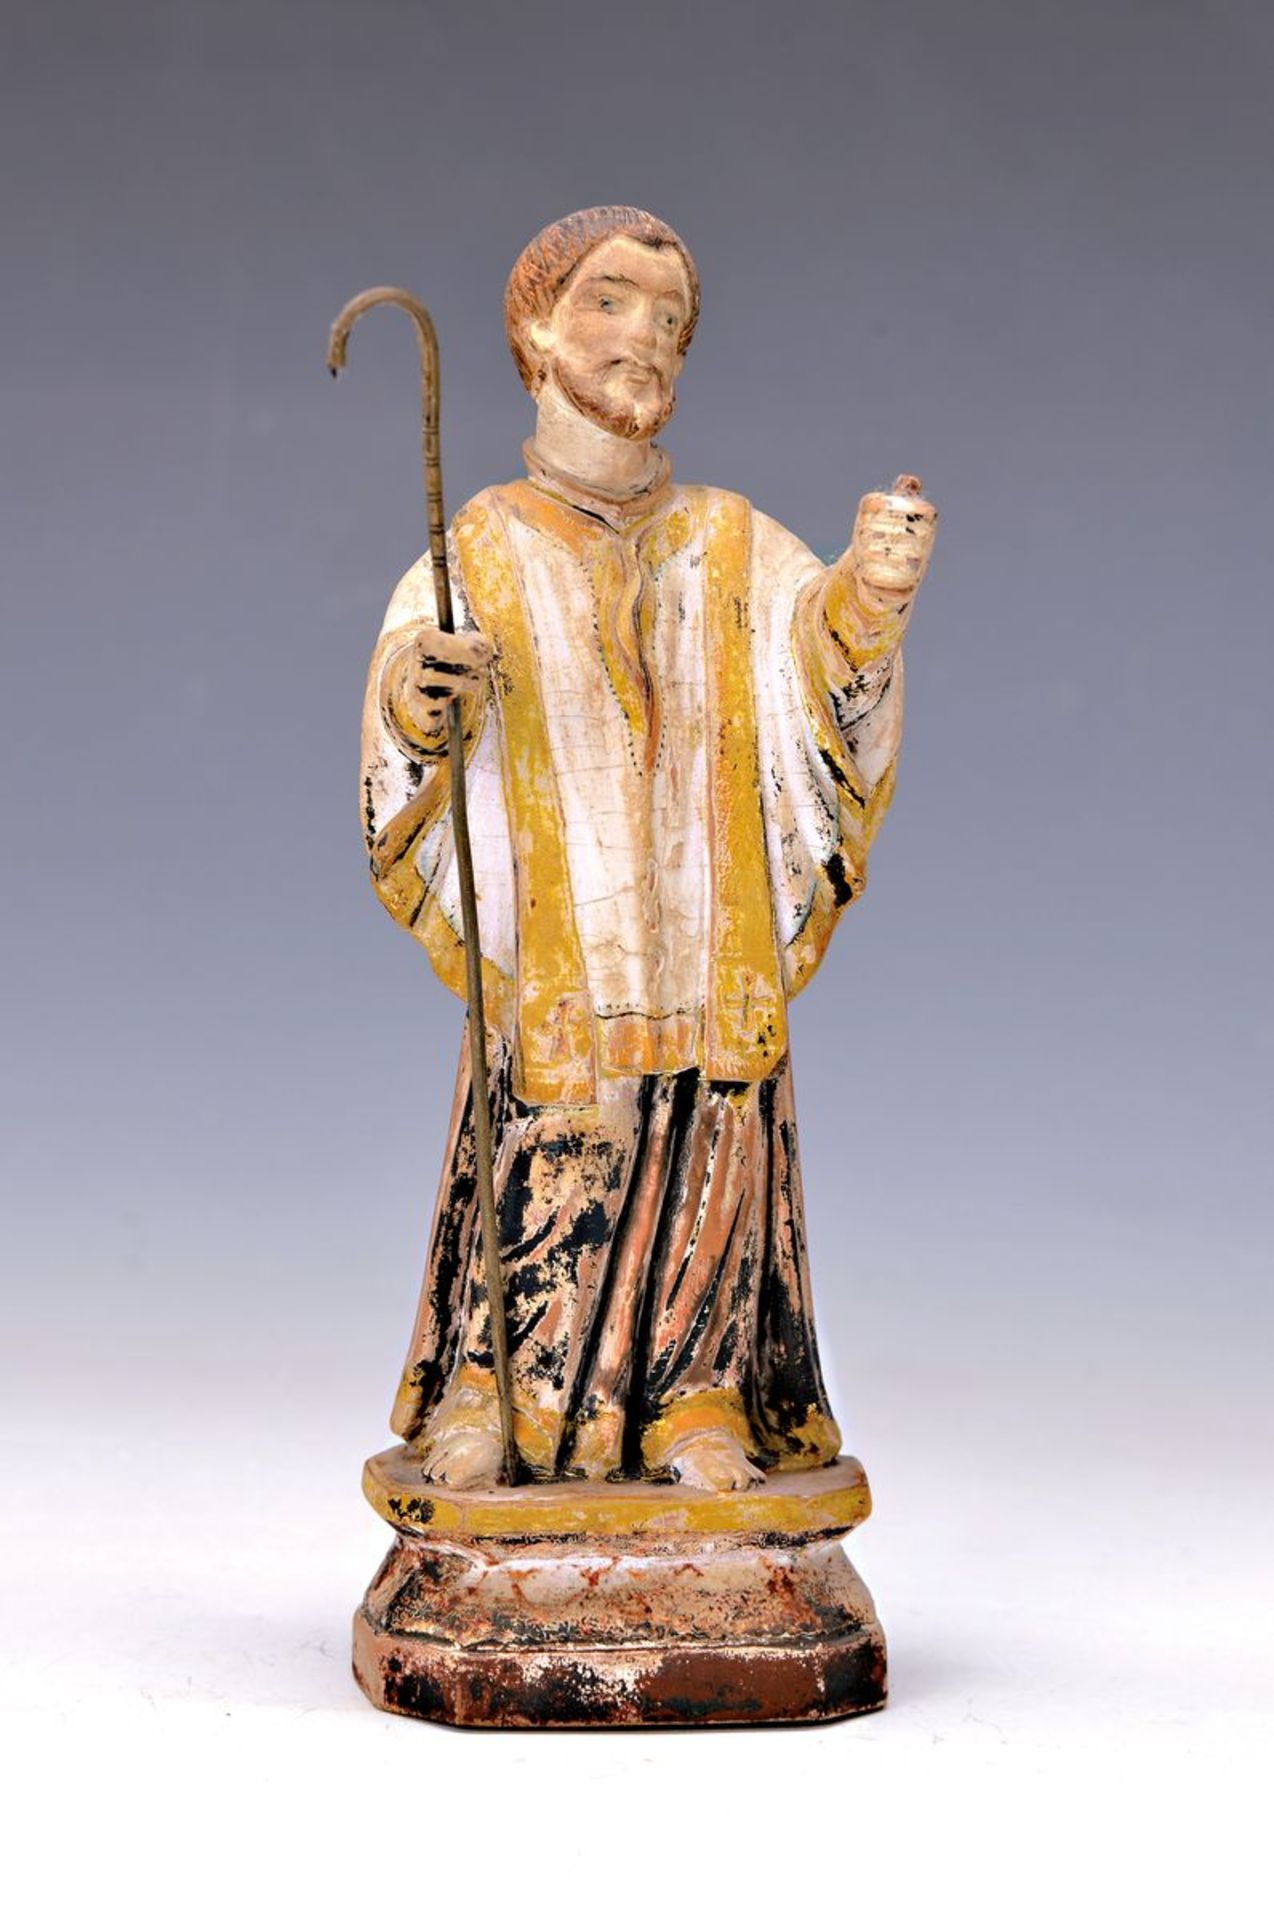 Heiligenfigur, süddeutsch, um 1770, Lindenholz geschnitzt, Attribut fehlt, wohl Heiliger Nepomuk,